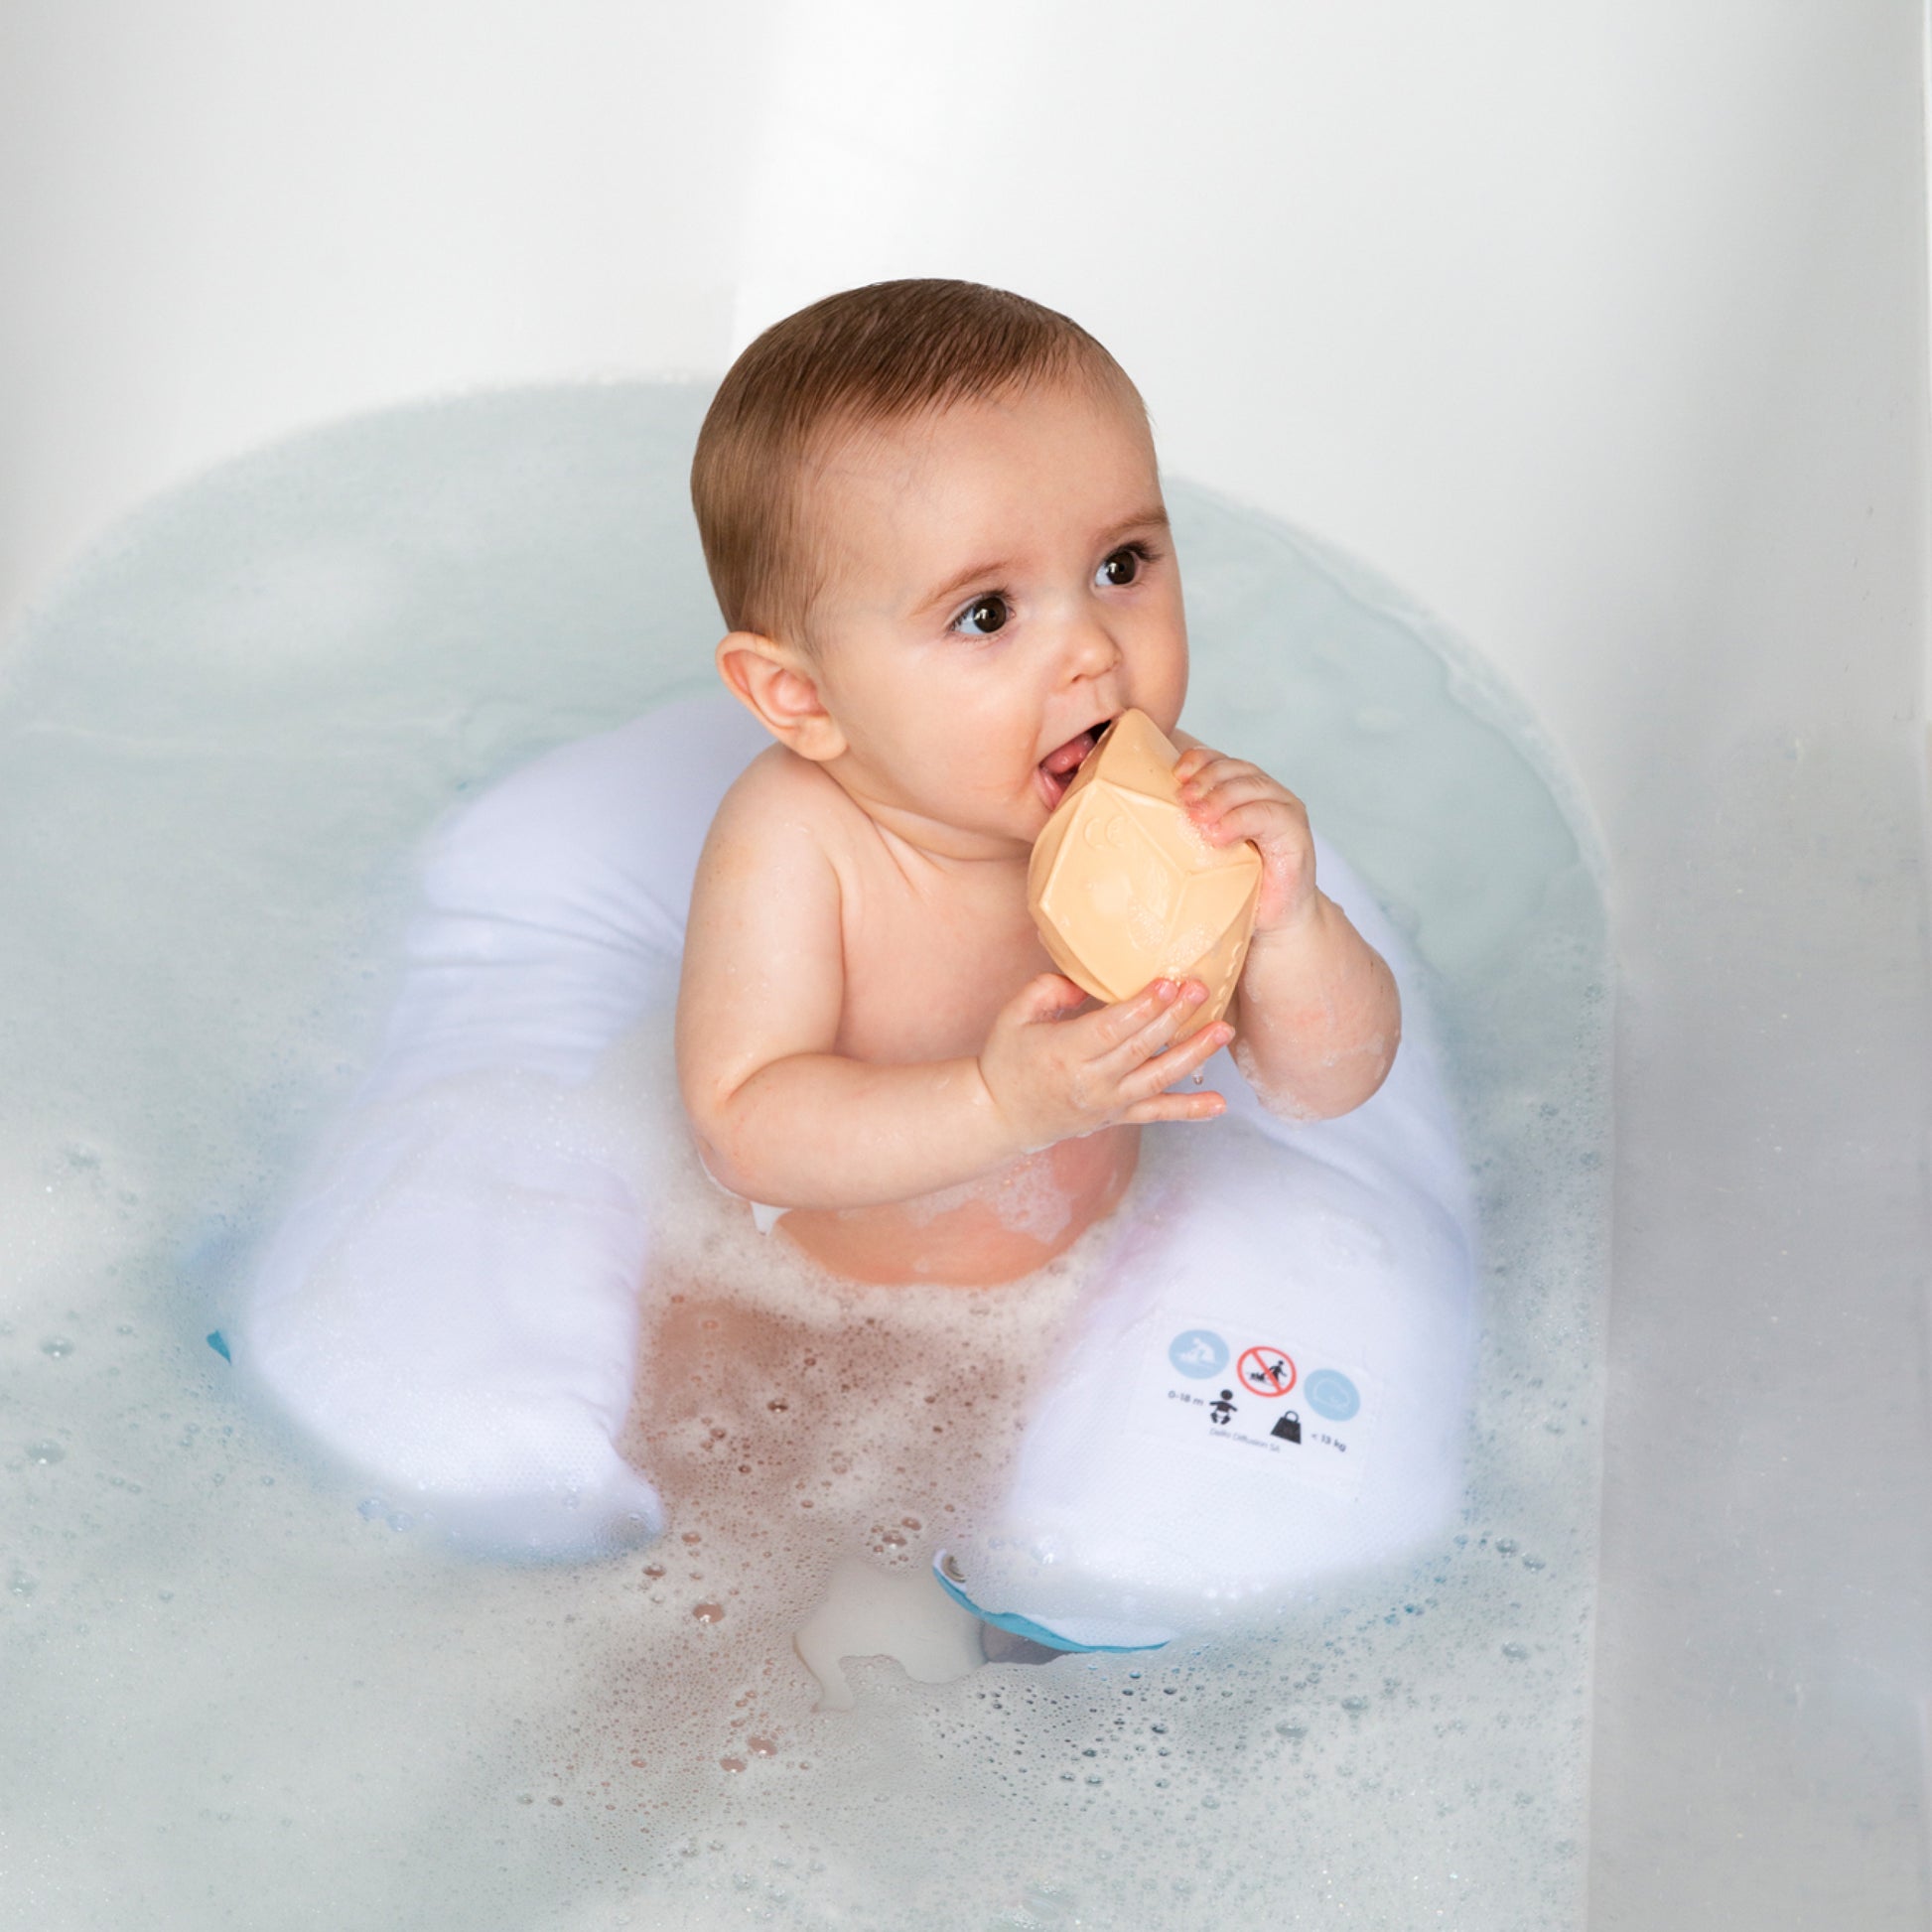 Comfy Bath de Doomoo Basics